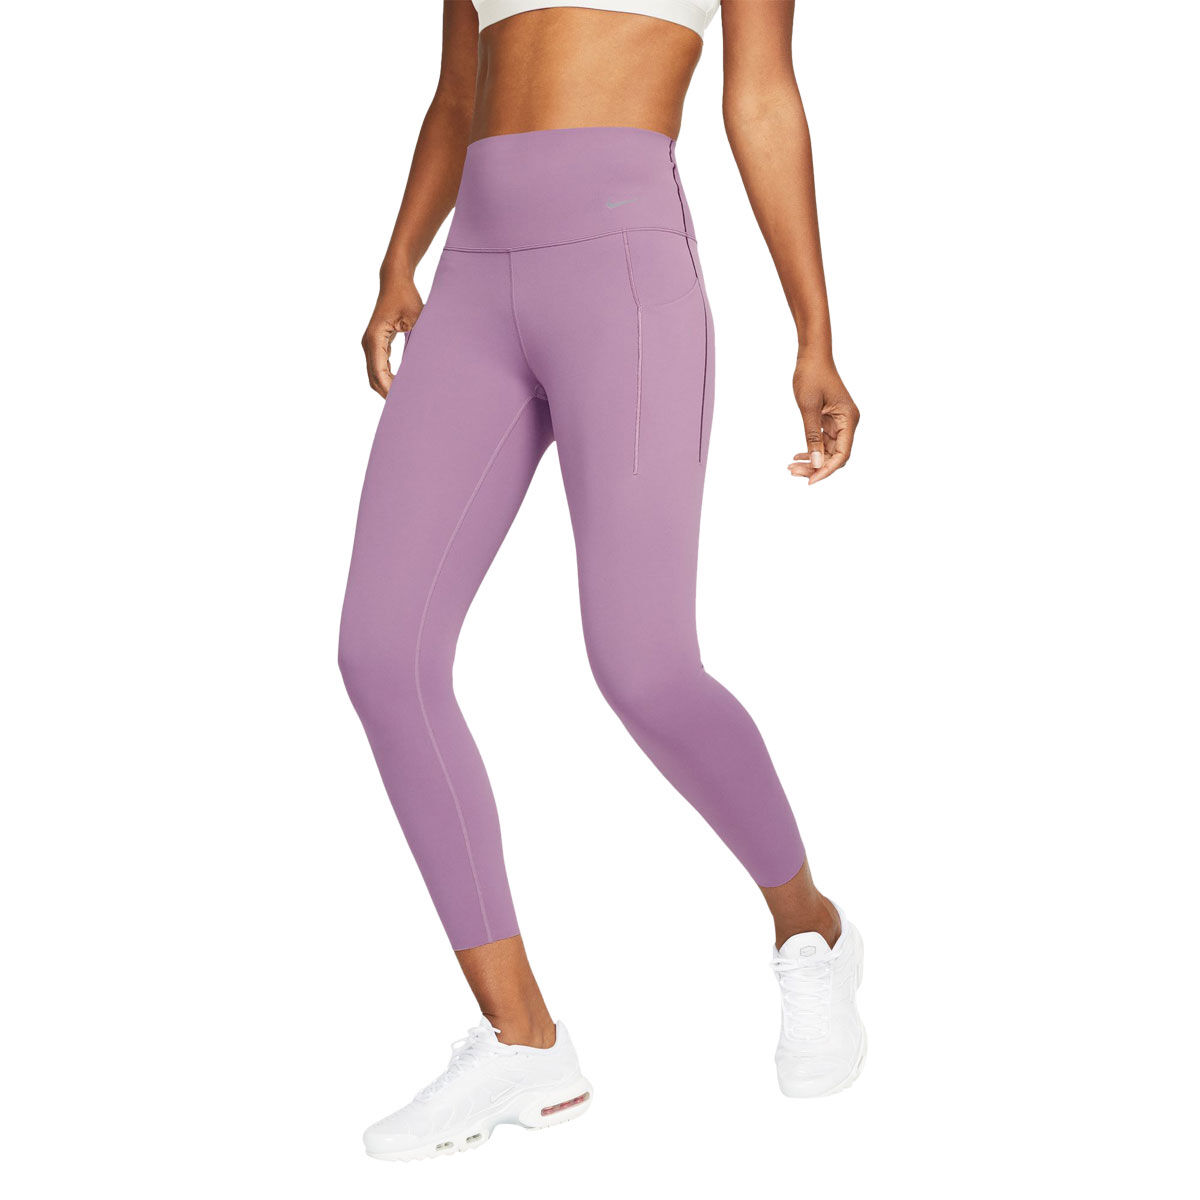 Rockets (purple) Women’s Activewear Leggings - Tall 33” inside leg